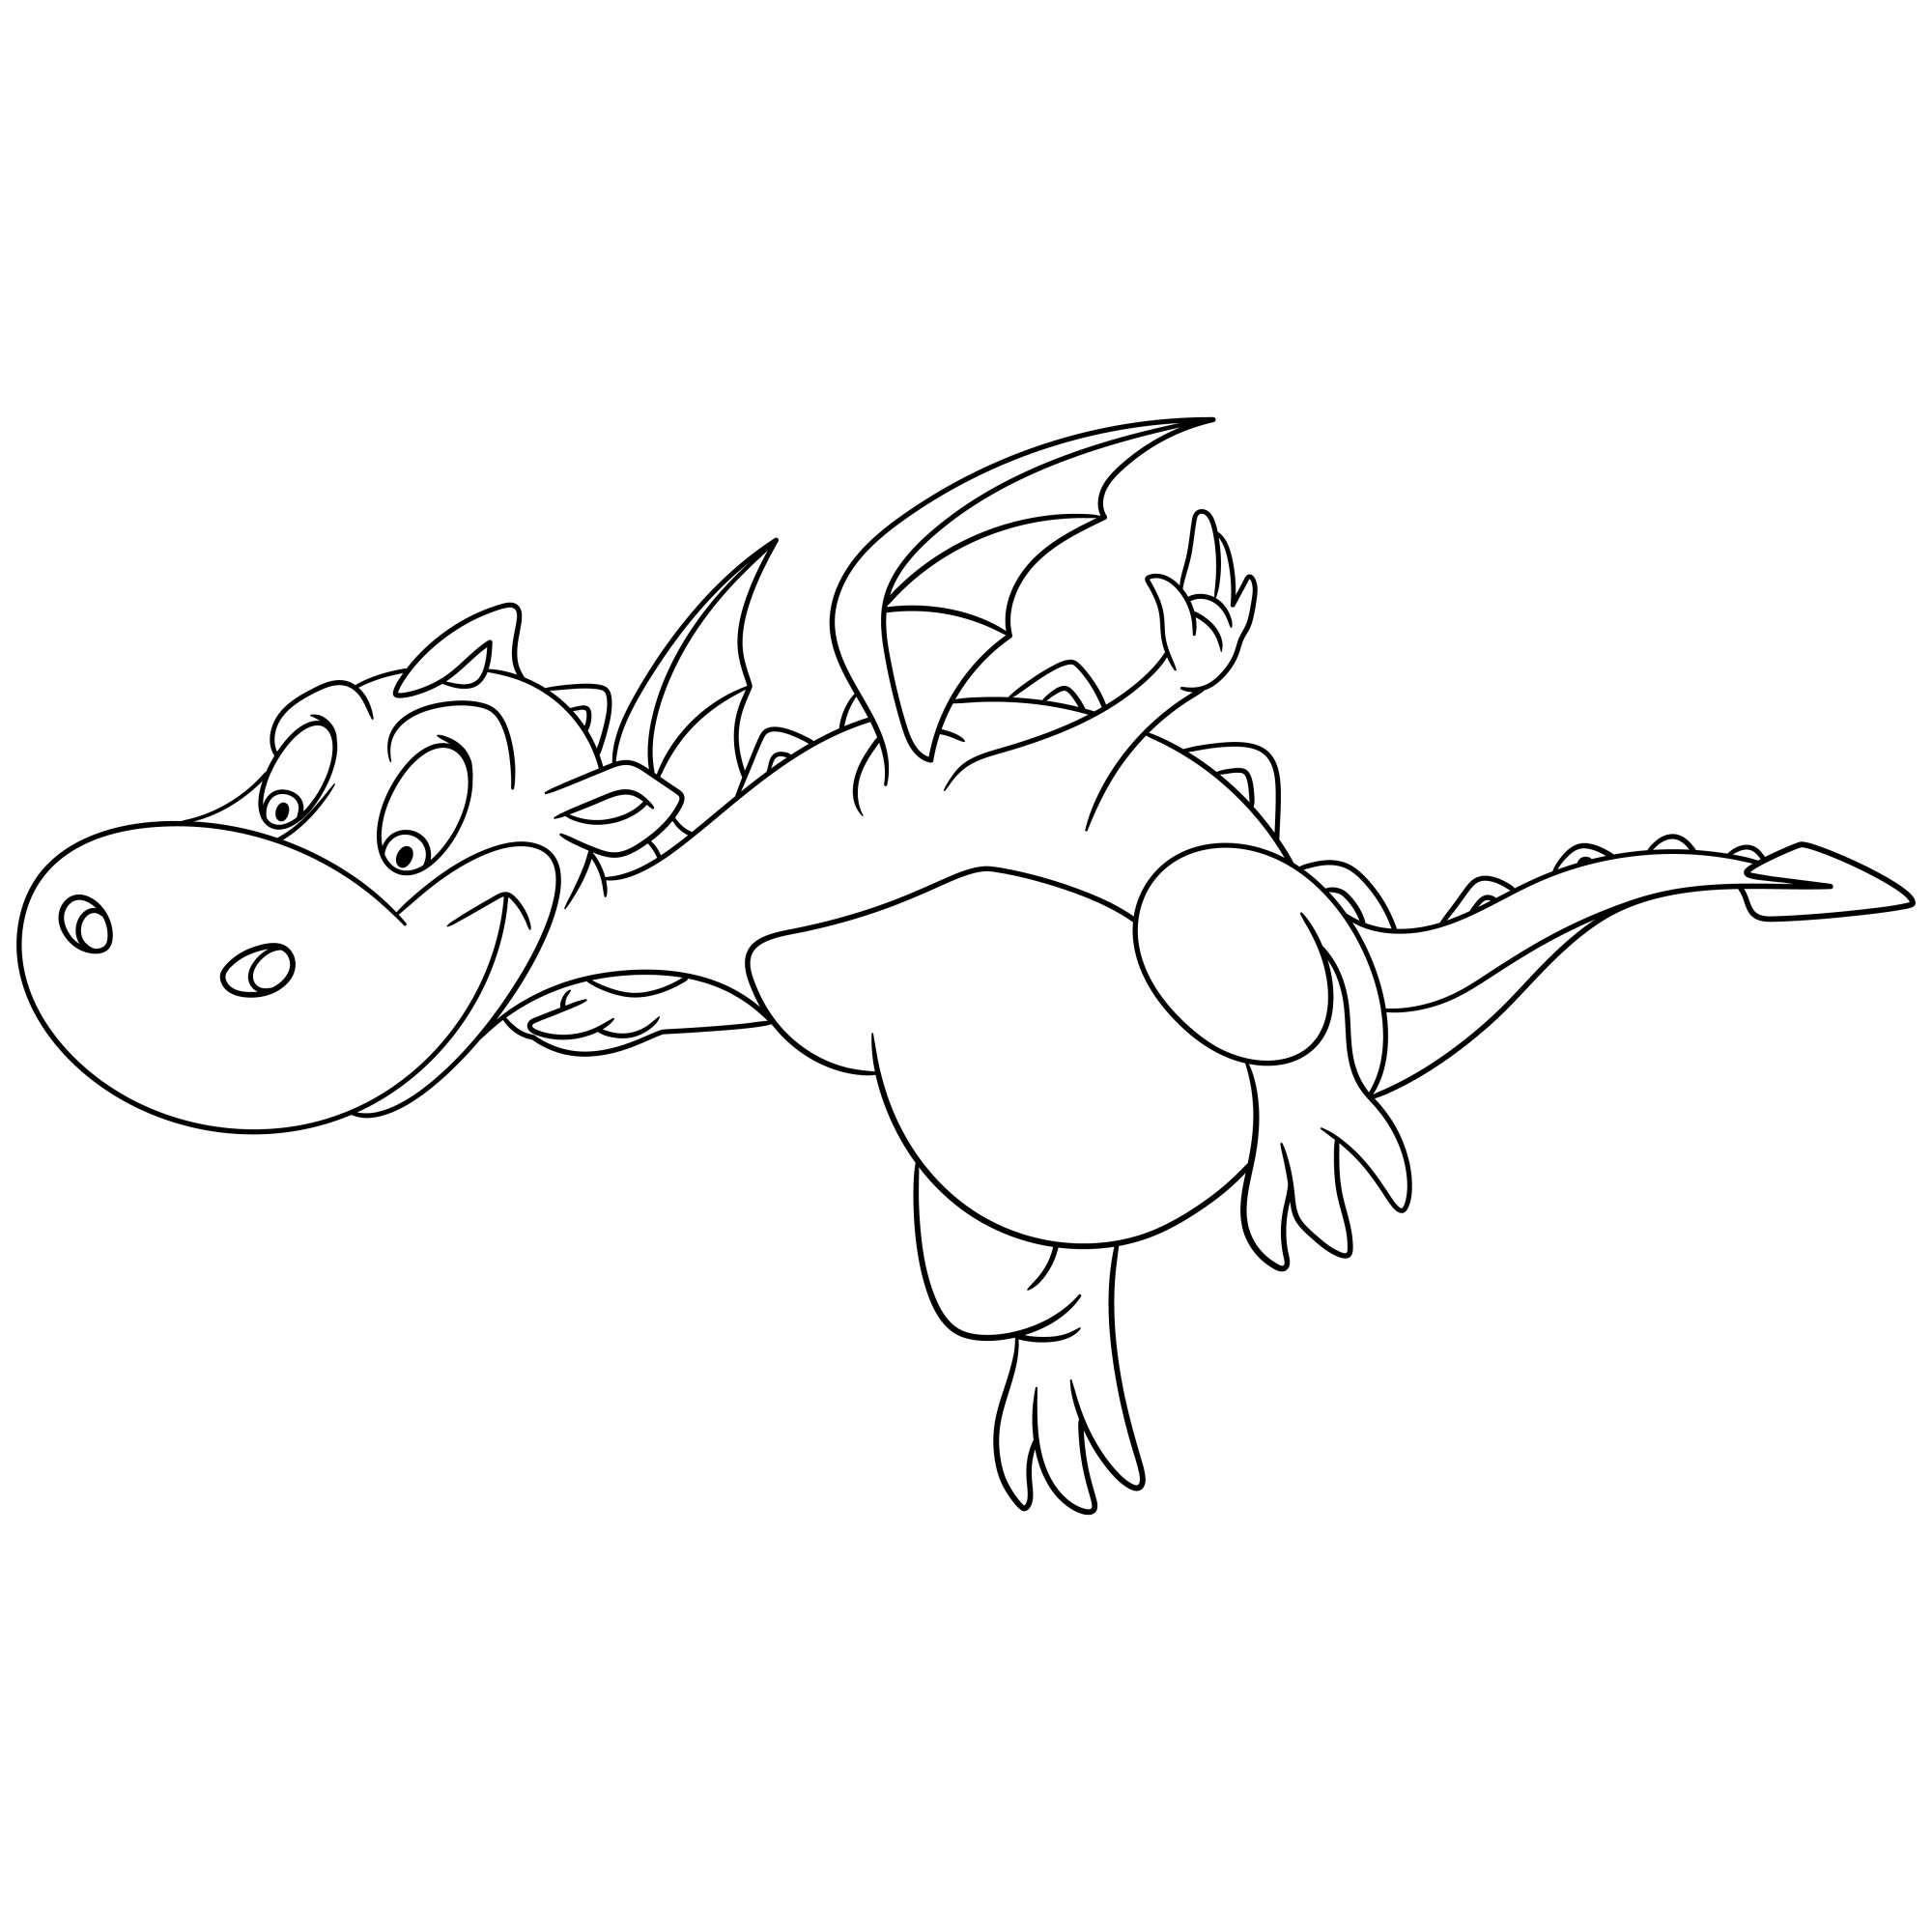 Раскраска для детей: маленький дракон учится летать